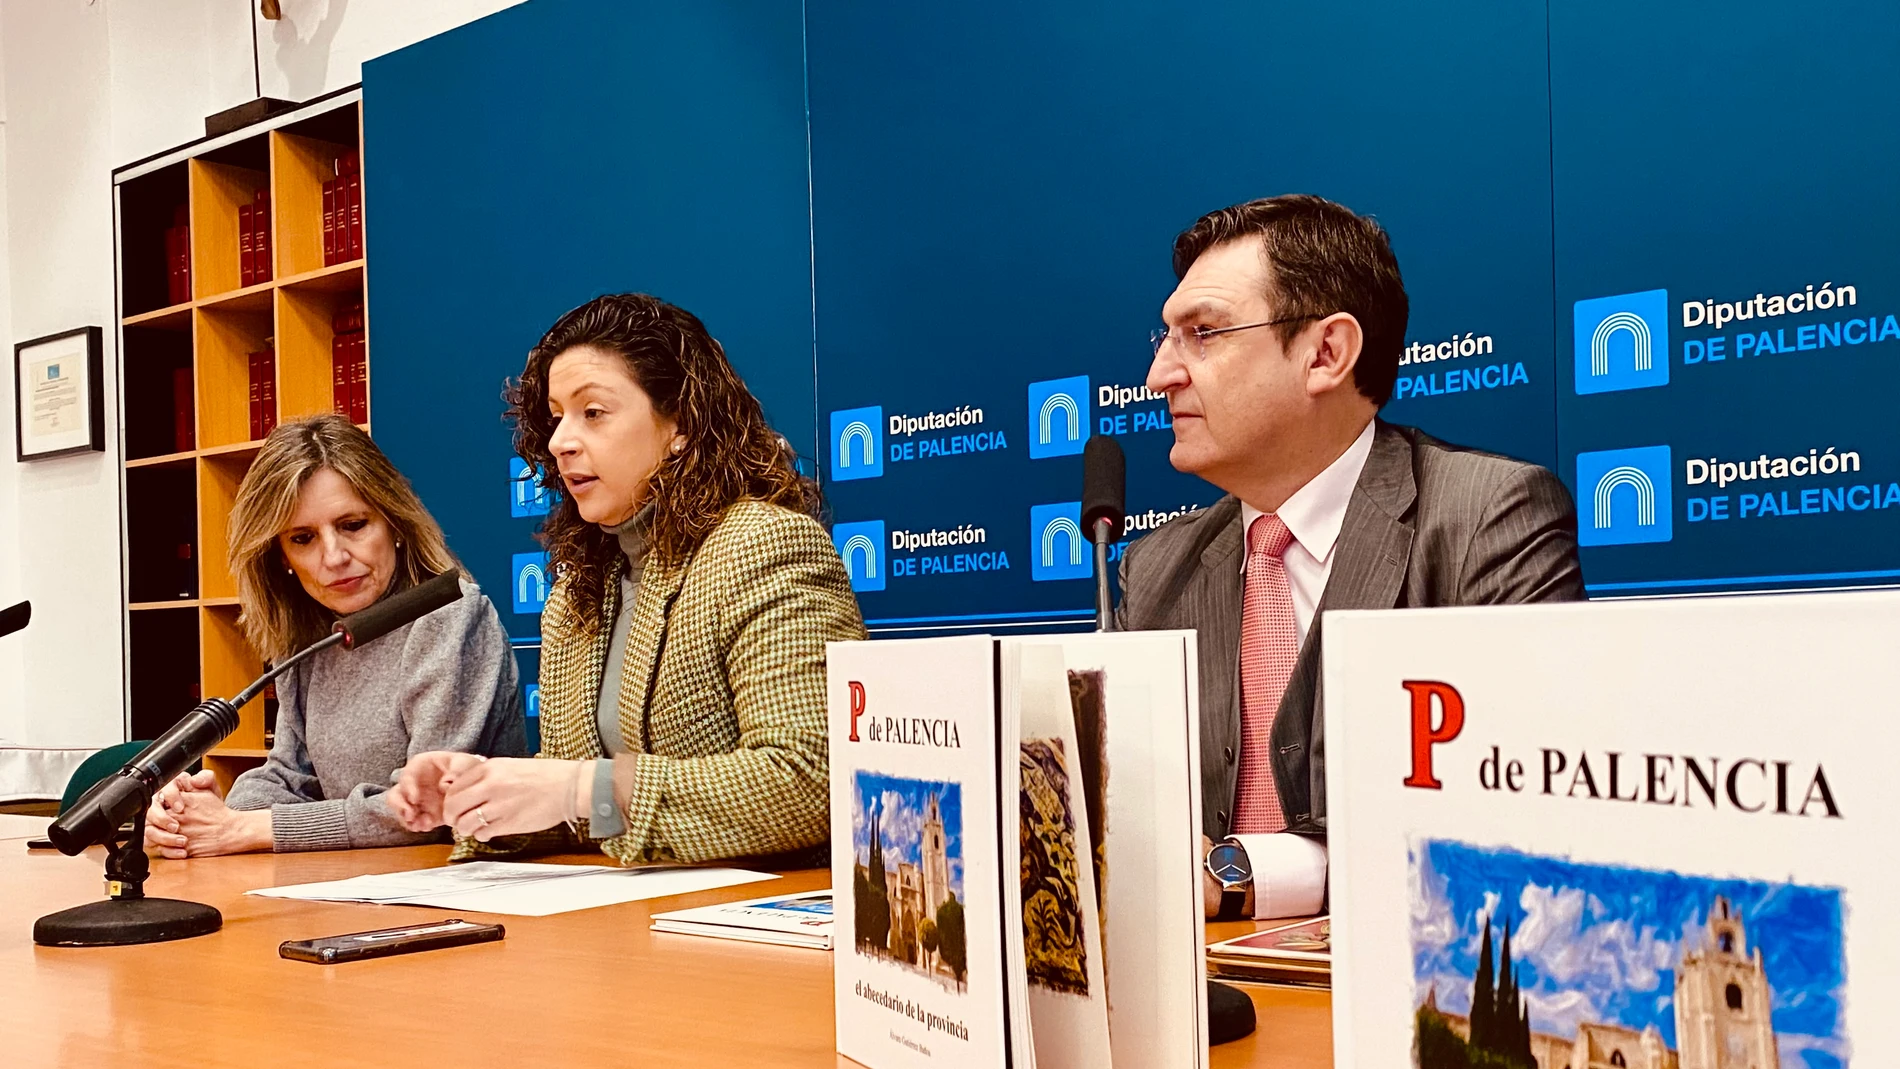 Presentación de "P de Palencia" por parte de Carolina Valbuena y Álvaro Gutiérrez